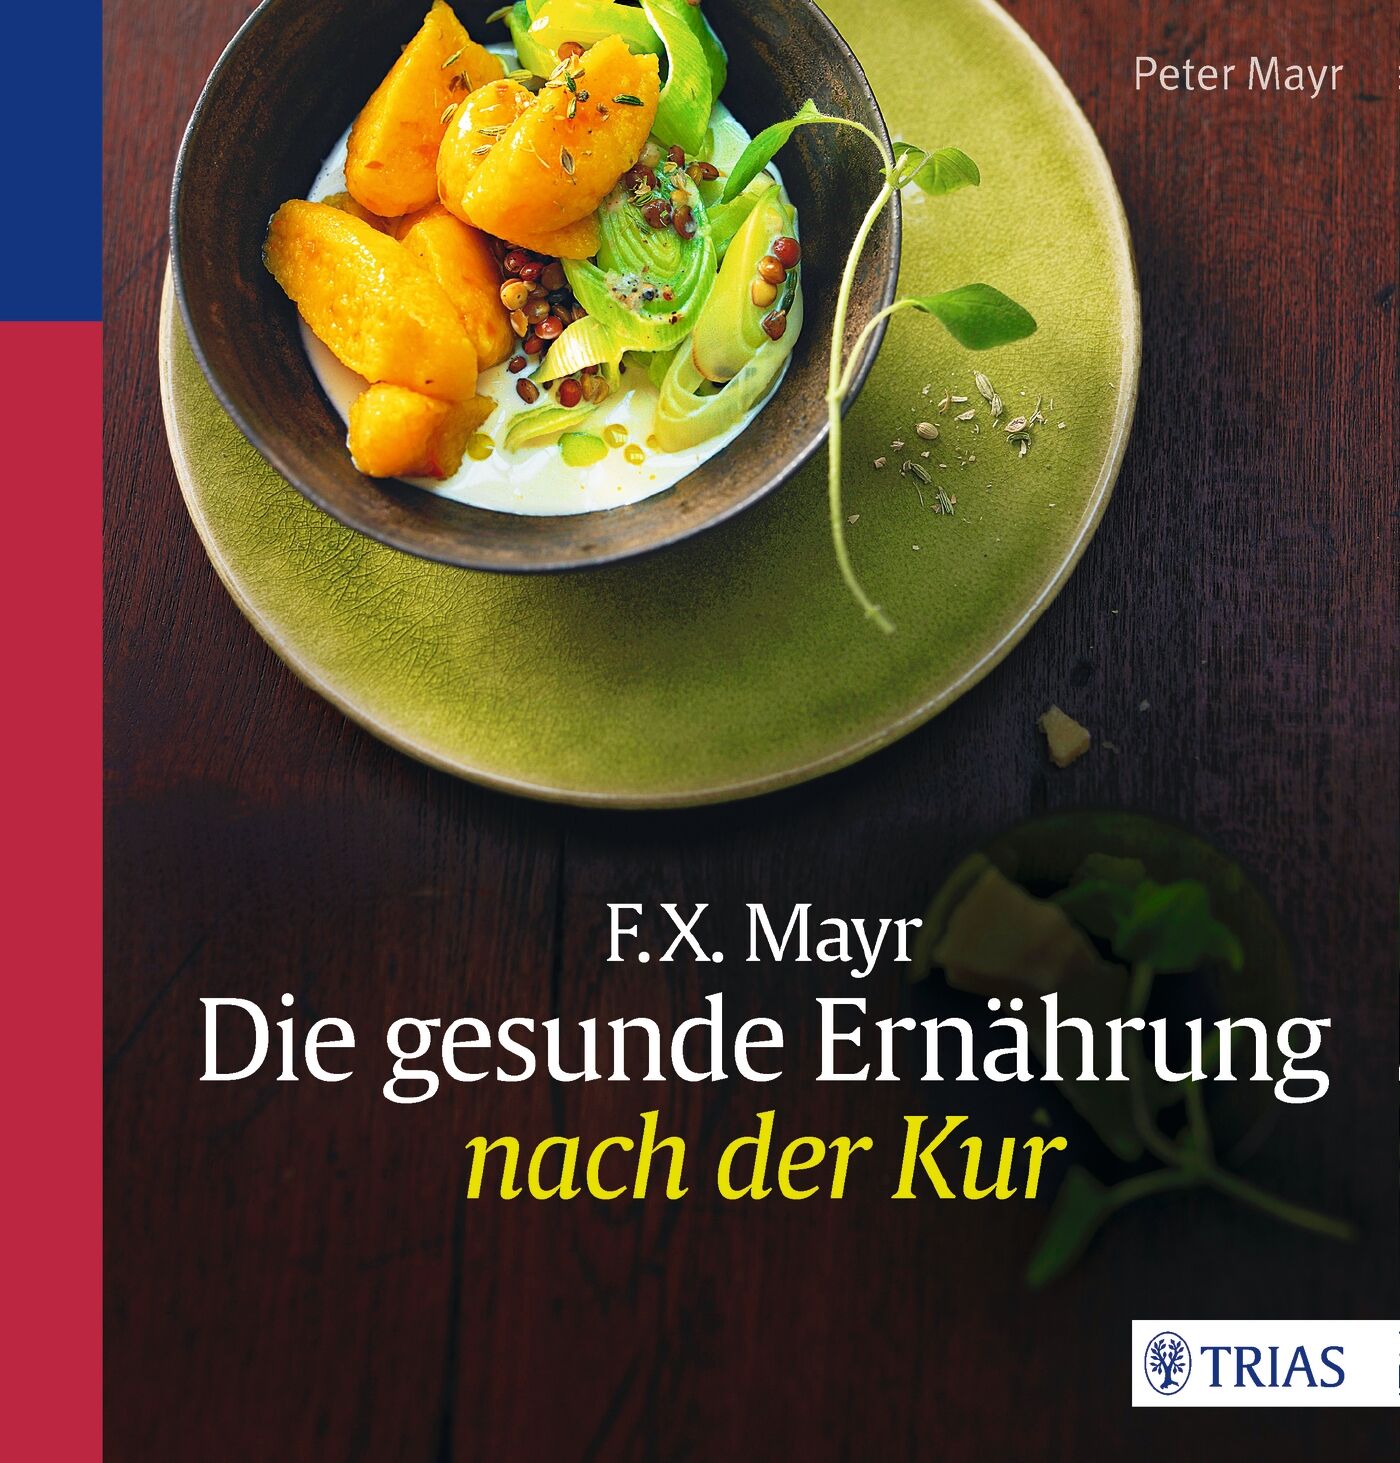 F.X. Mayr: Die gesunde Ernährung nach der Kur, 9783830484677